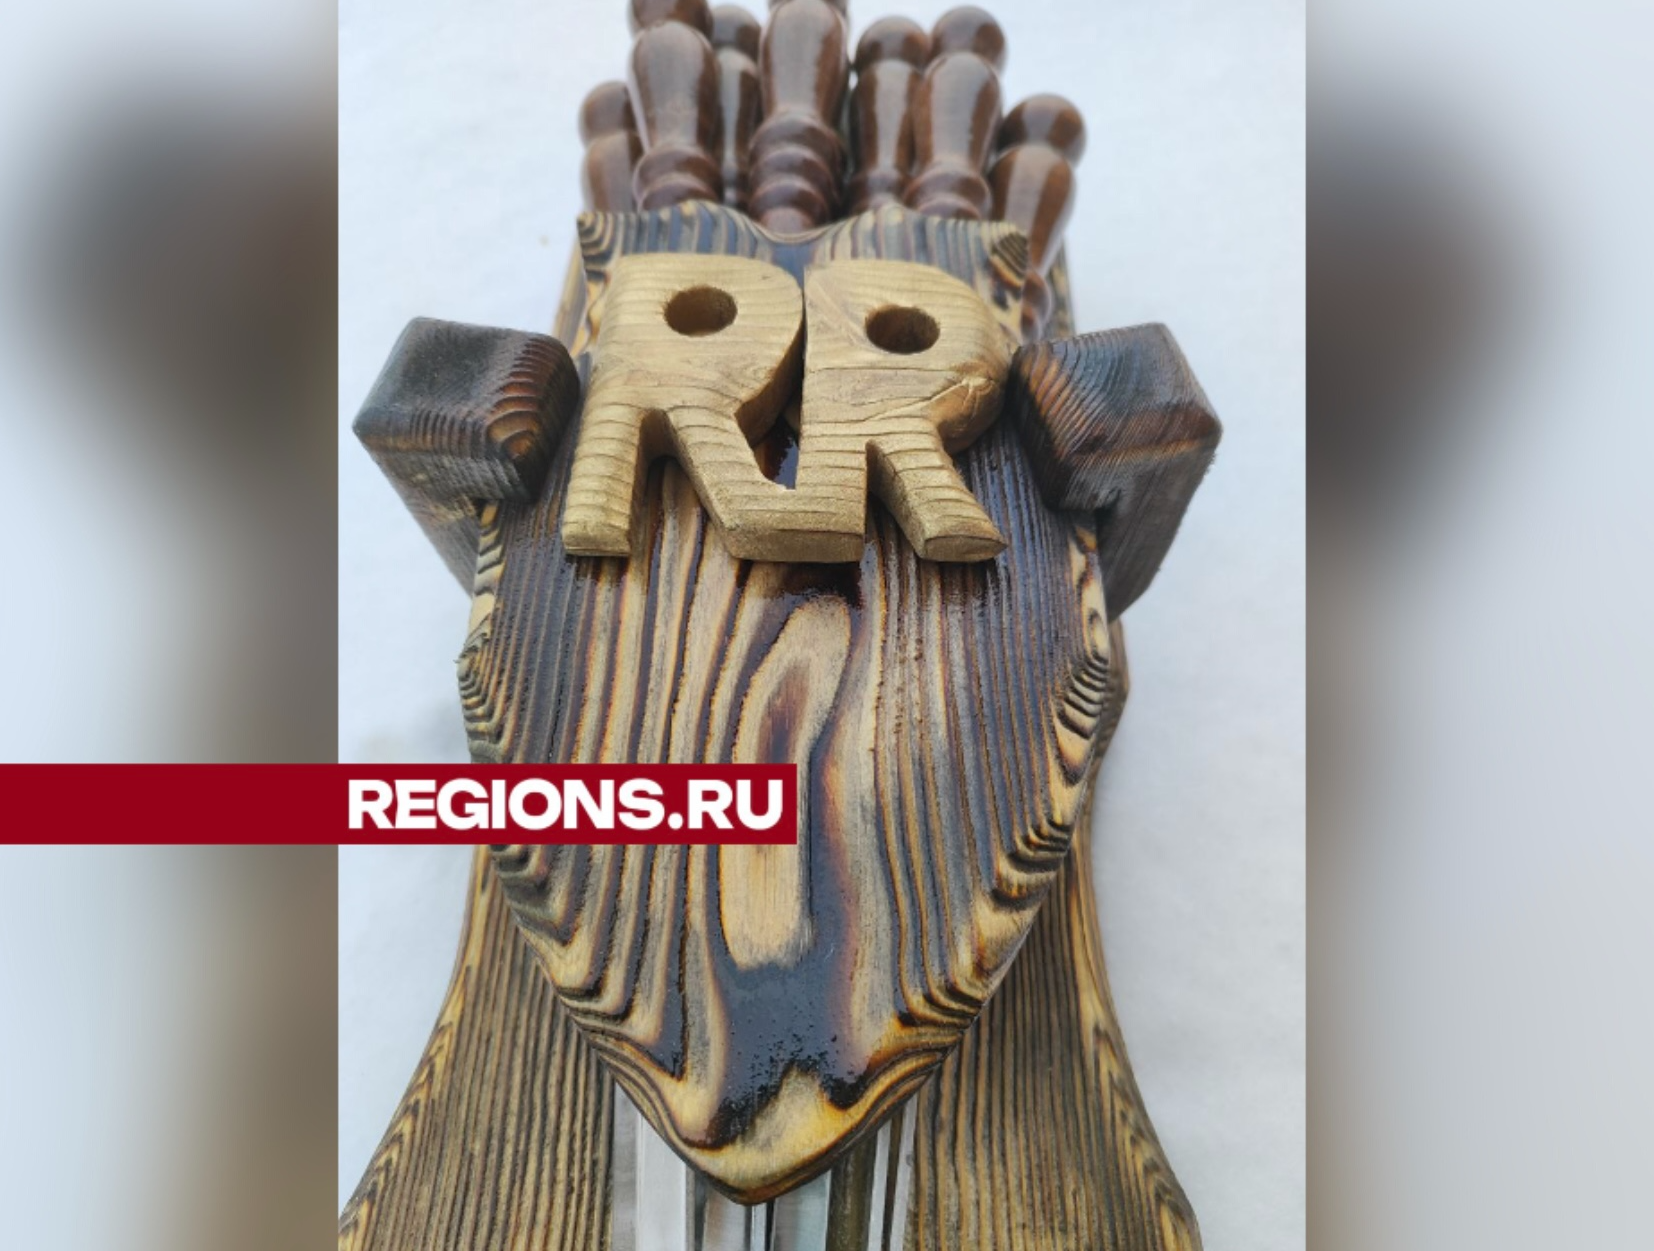 Деревянные изделия из Русавкино-Романово могут выставить на ярмарке в Италии